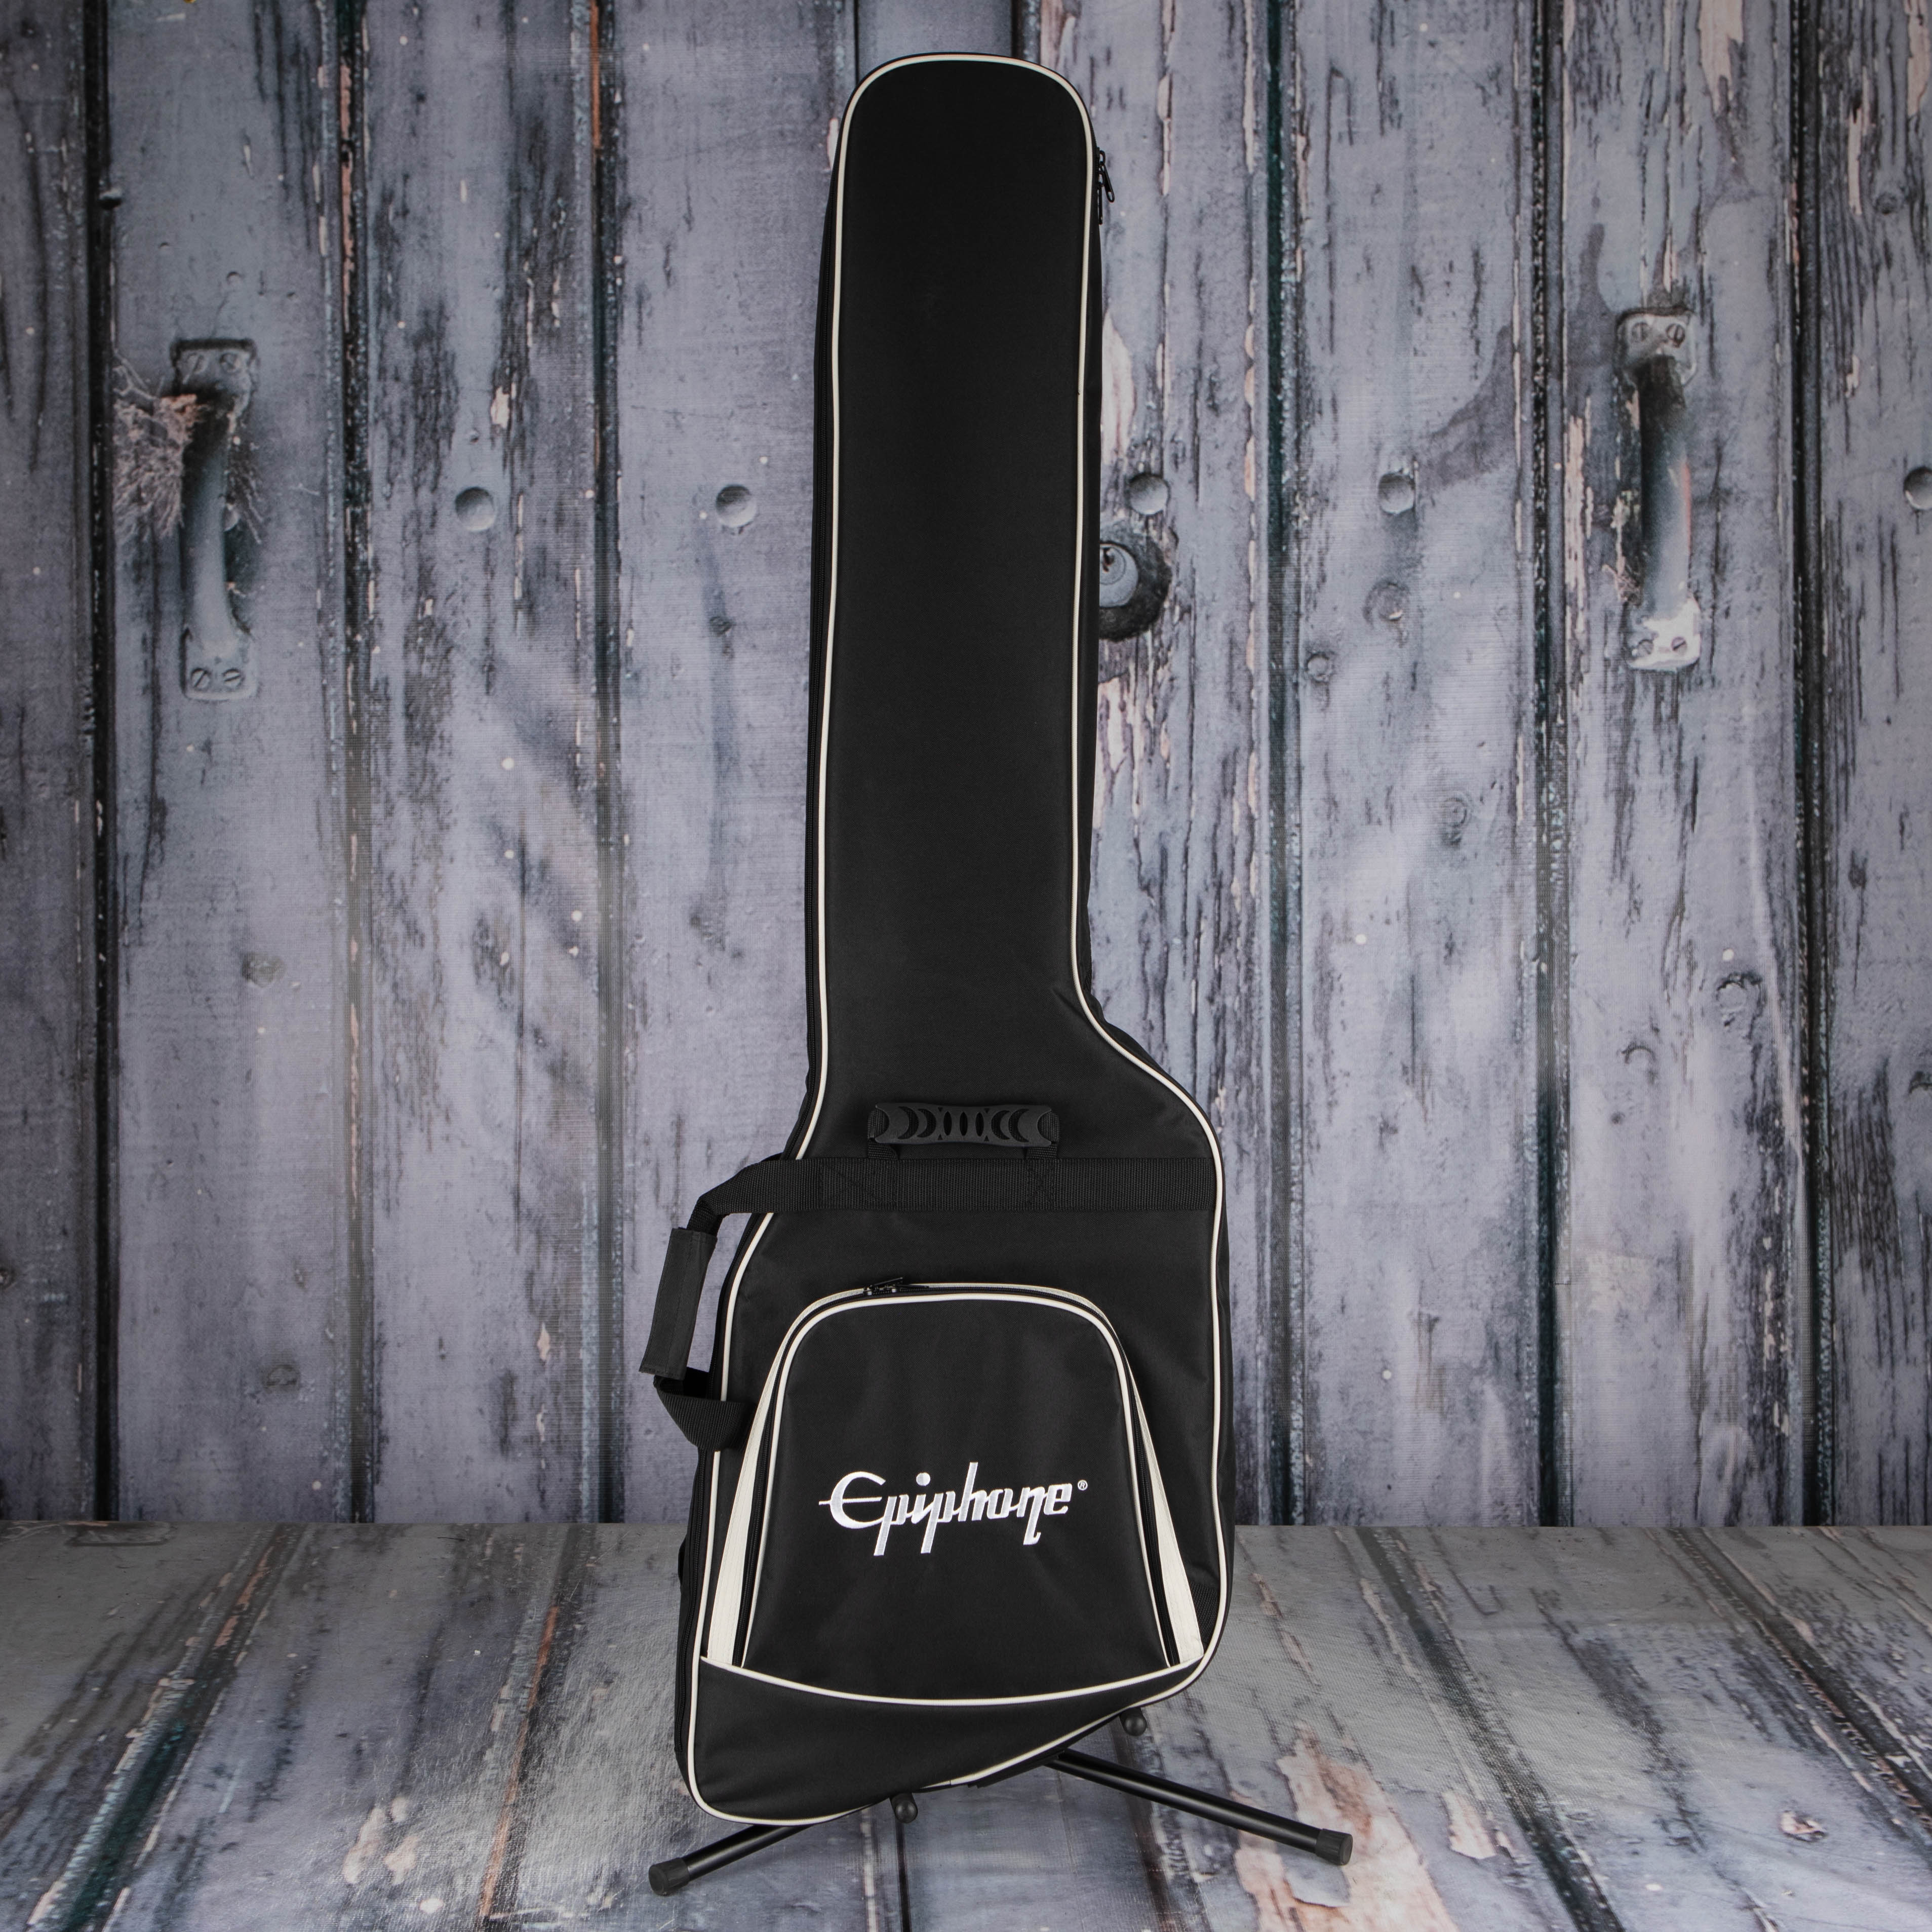 Epiphone Thunderbird '64 Electric Bass Guitar, Ember Red, bag